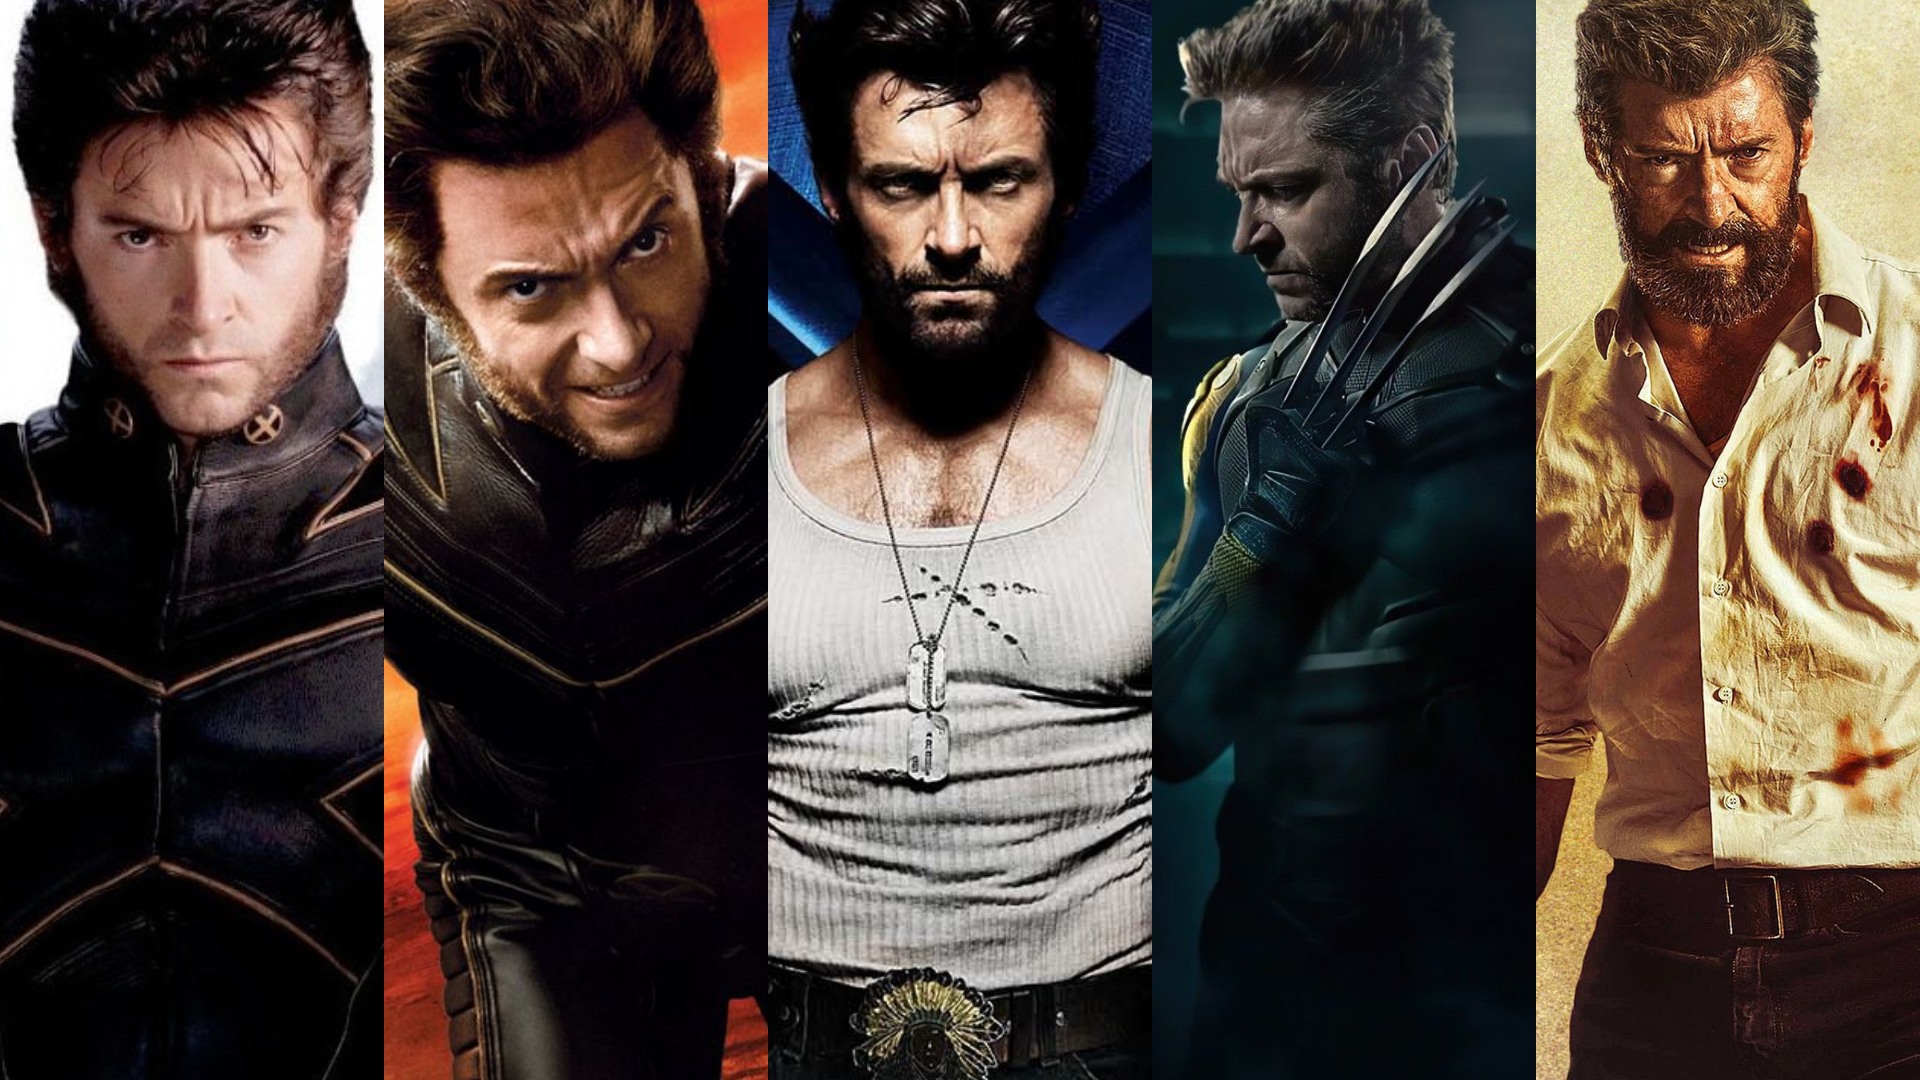 Hugh Jackman aparece com uniforme amarelo do Wolverine nas gravações de 'Deadpool  3